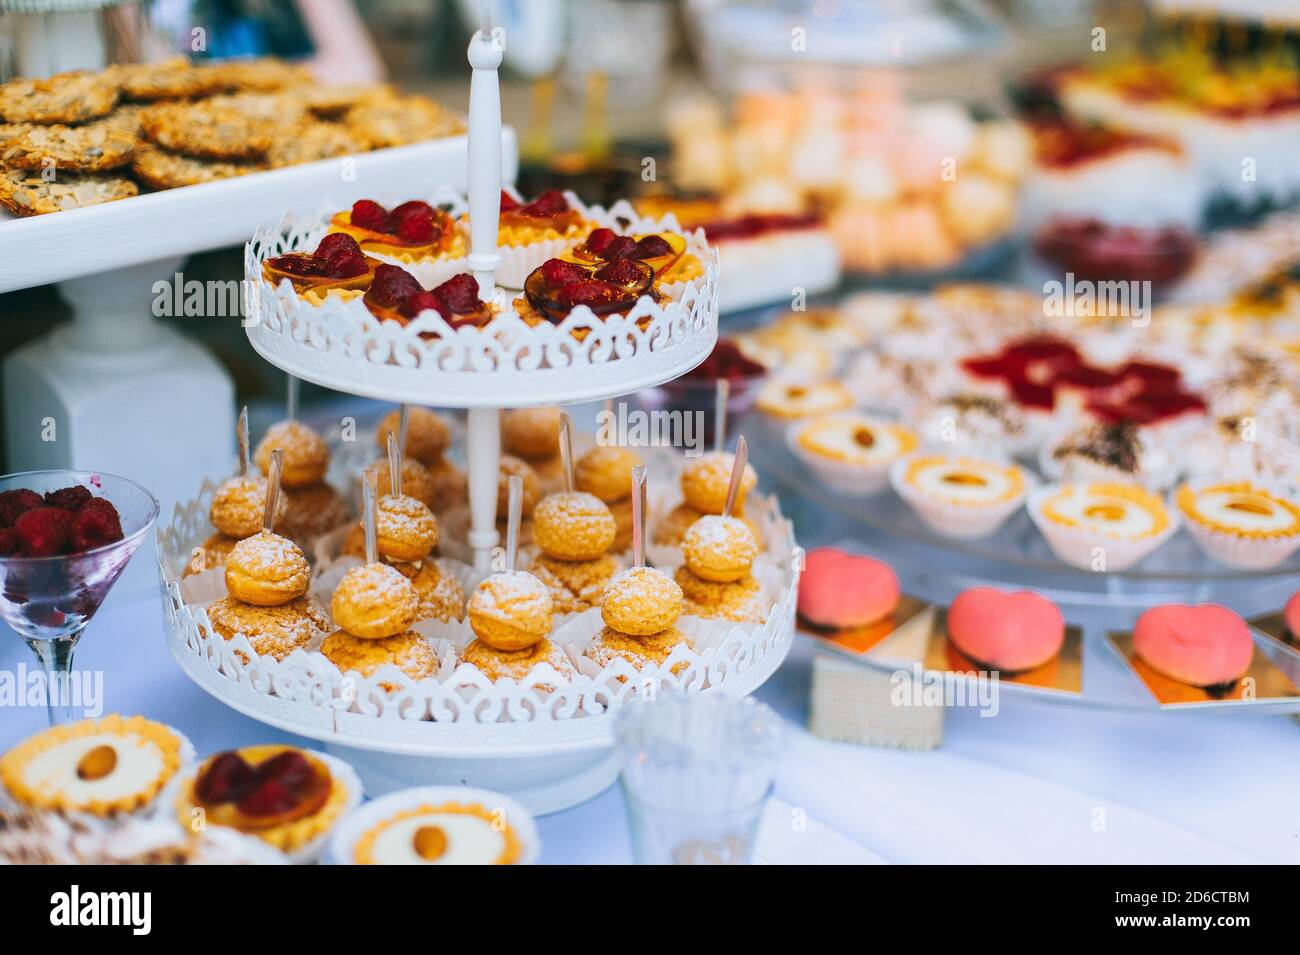 Bar à bonbons pour mariages avec petits gâteaux aux couleurs vives différentes, macarons, gâteaux, gelée et fruits. Banque D'Images